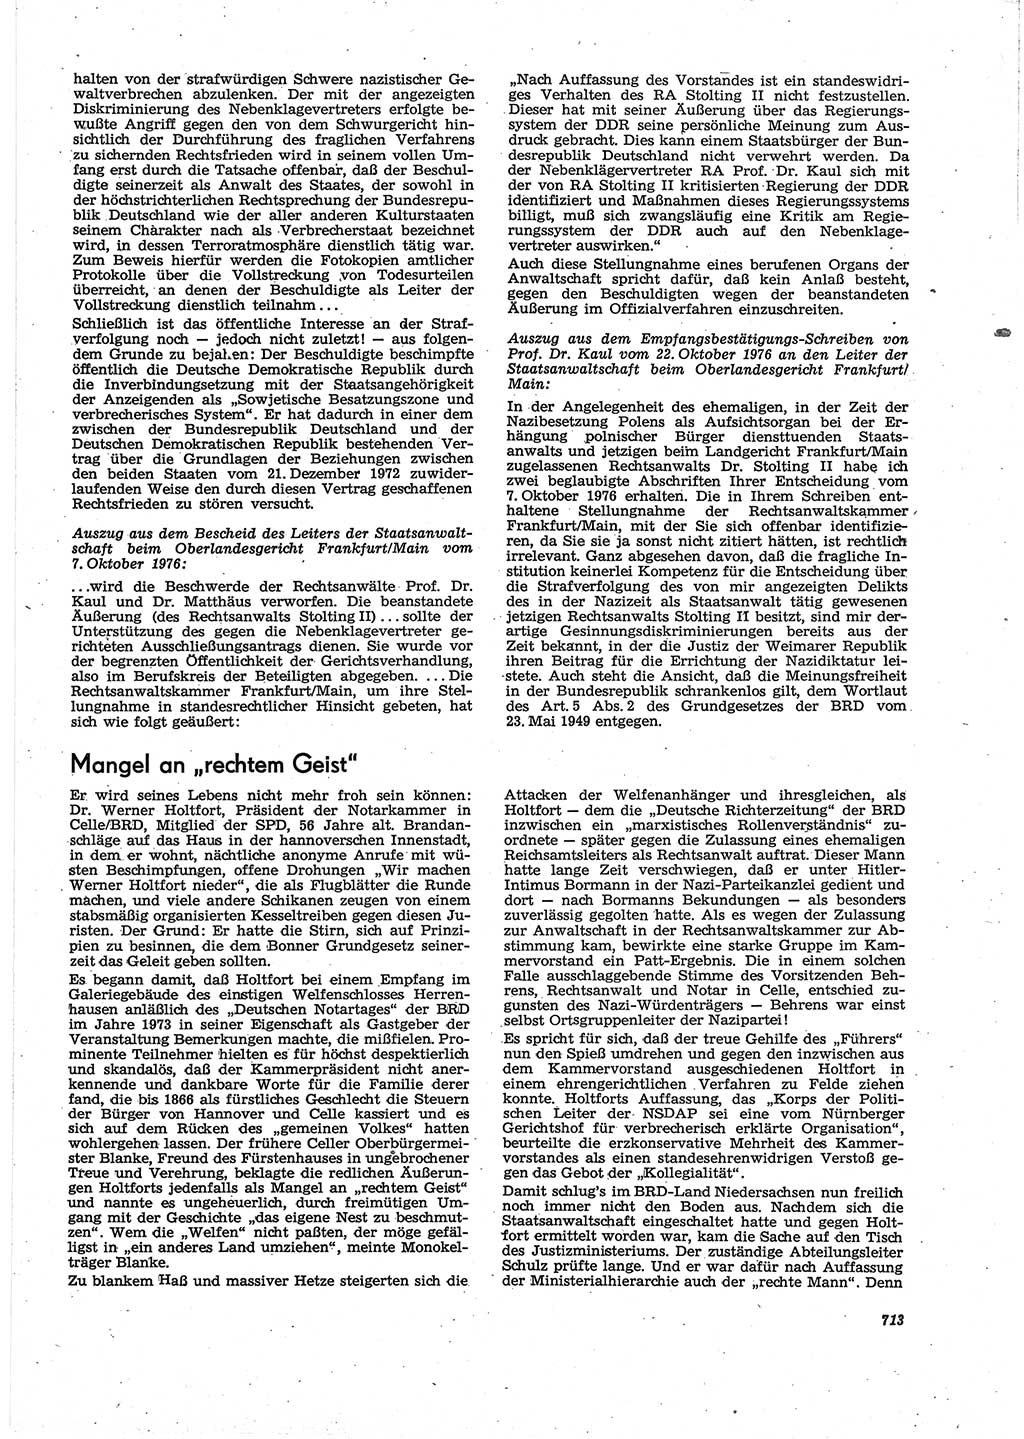 Neue Justiz (NJ), Zeitschrift für Recht und Rechtswissenschaft [Deutsche Demokratische Republik (DDR)], 30. Jahrgang 1976, Seite 713 (NJ DDR 1976, S. 713)